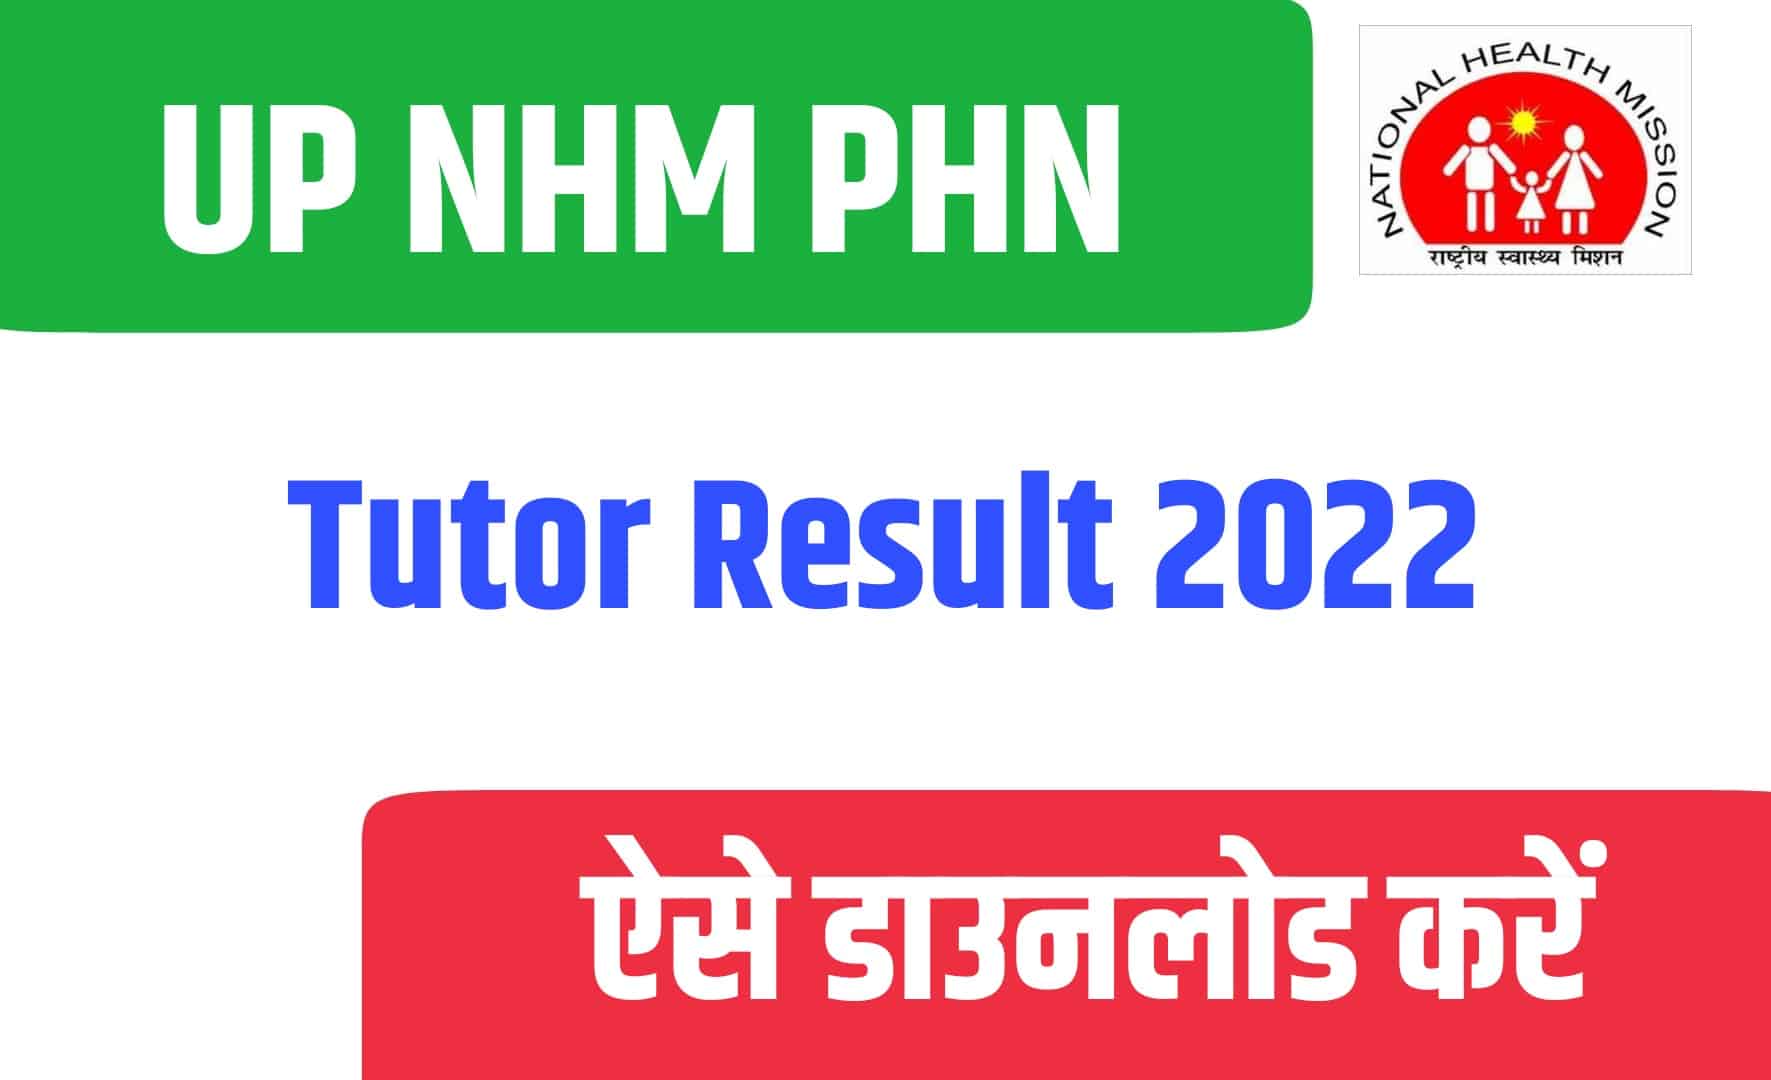 UP NHM PHN Tutor Result 2022